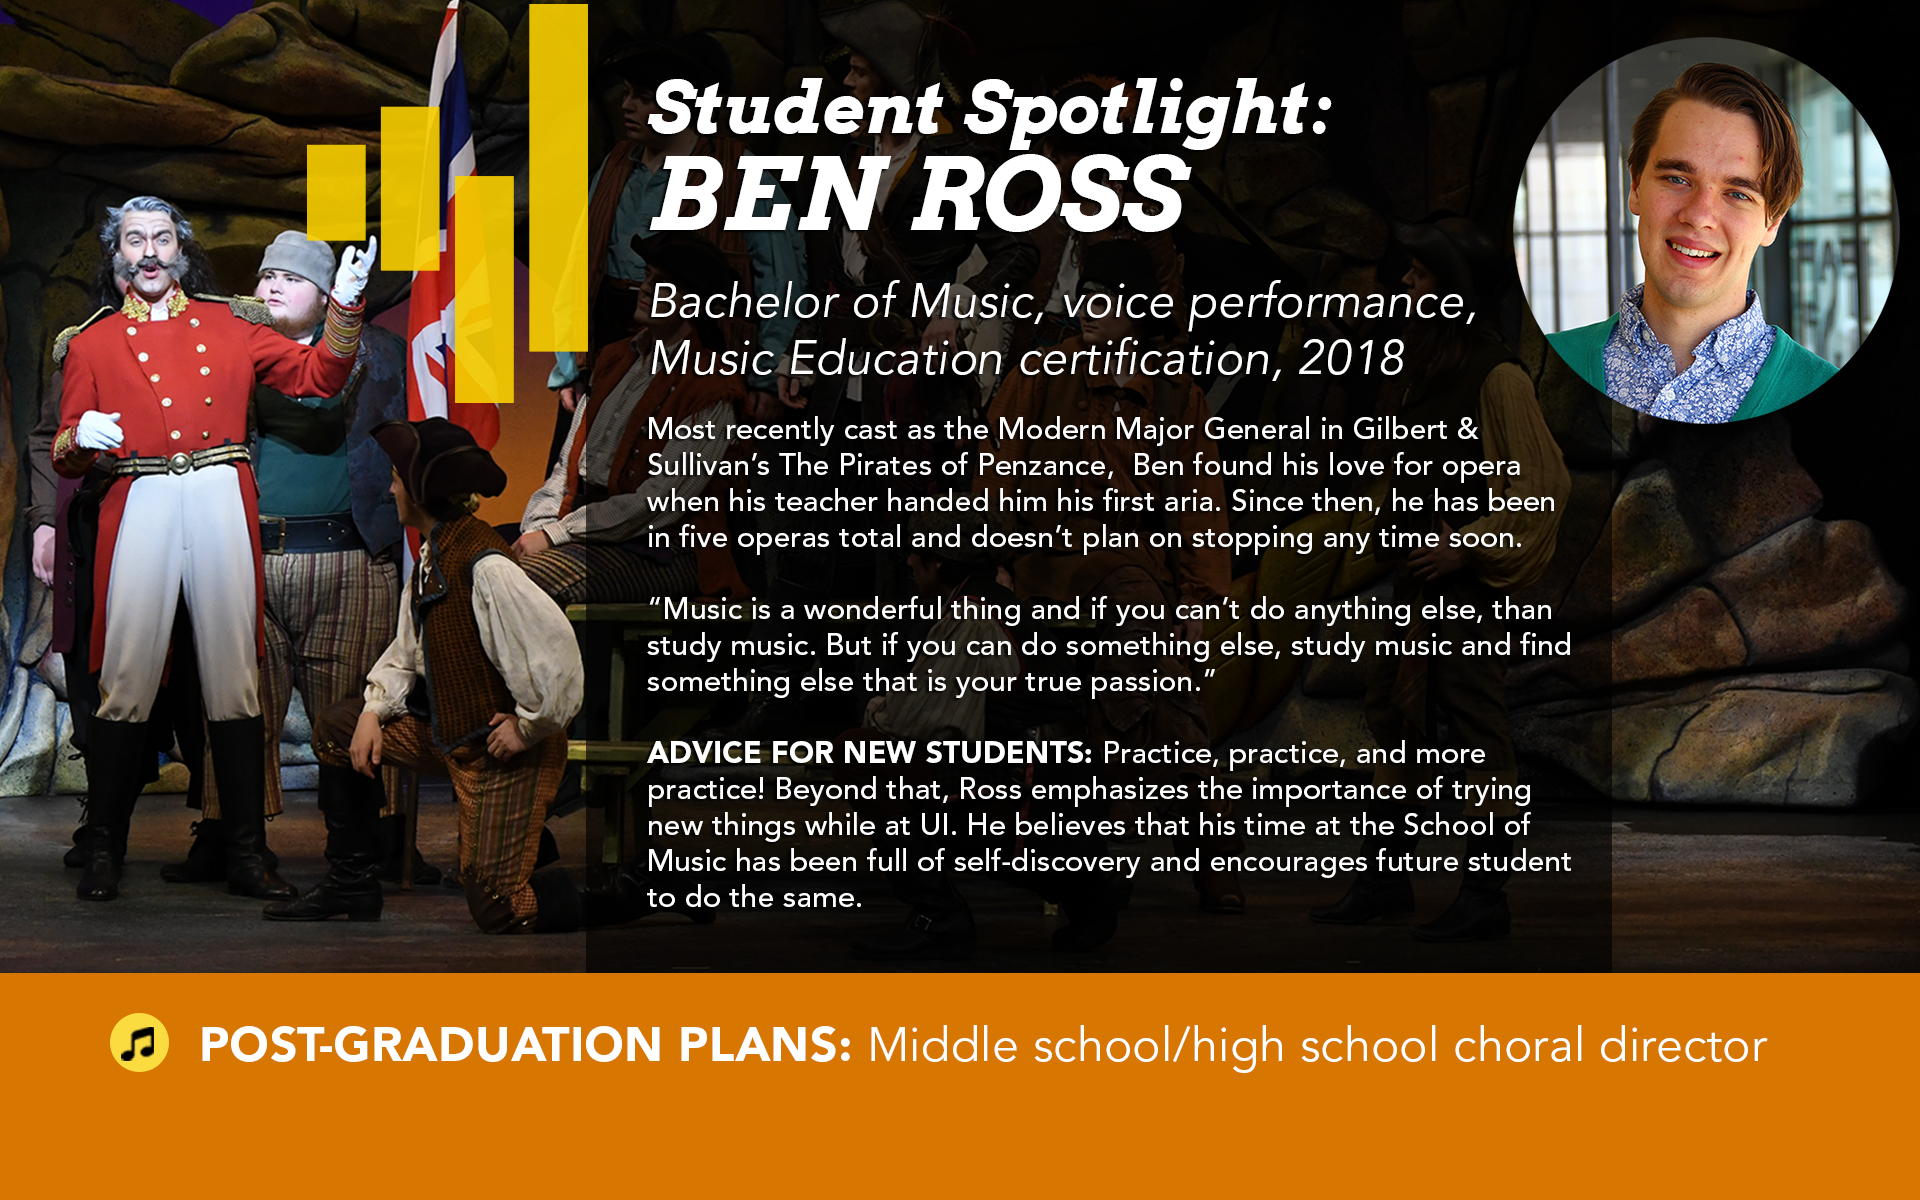 Student Spotlight Ben Ross